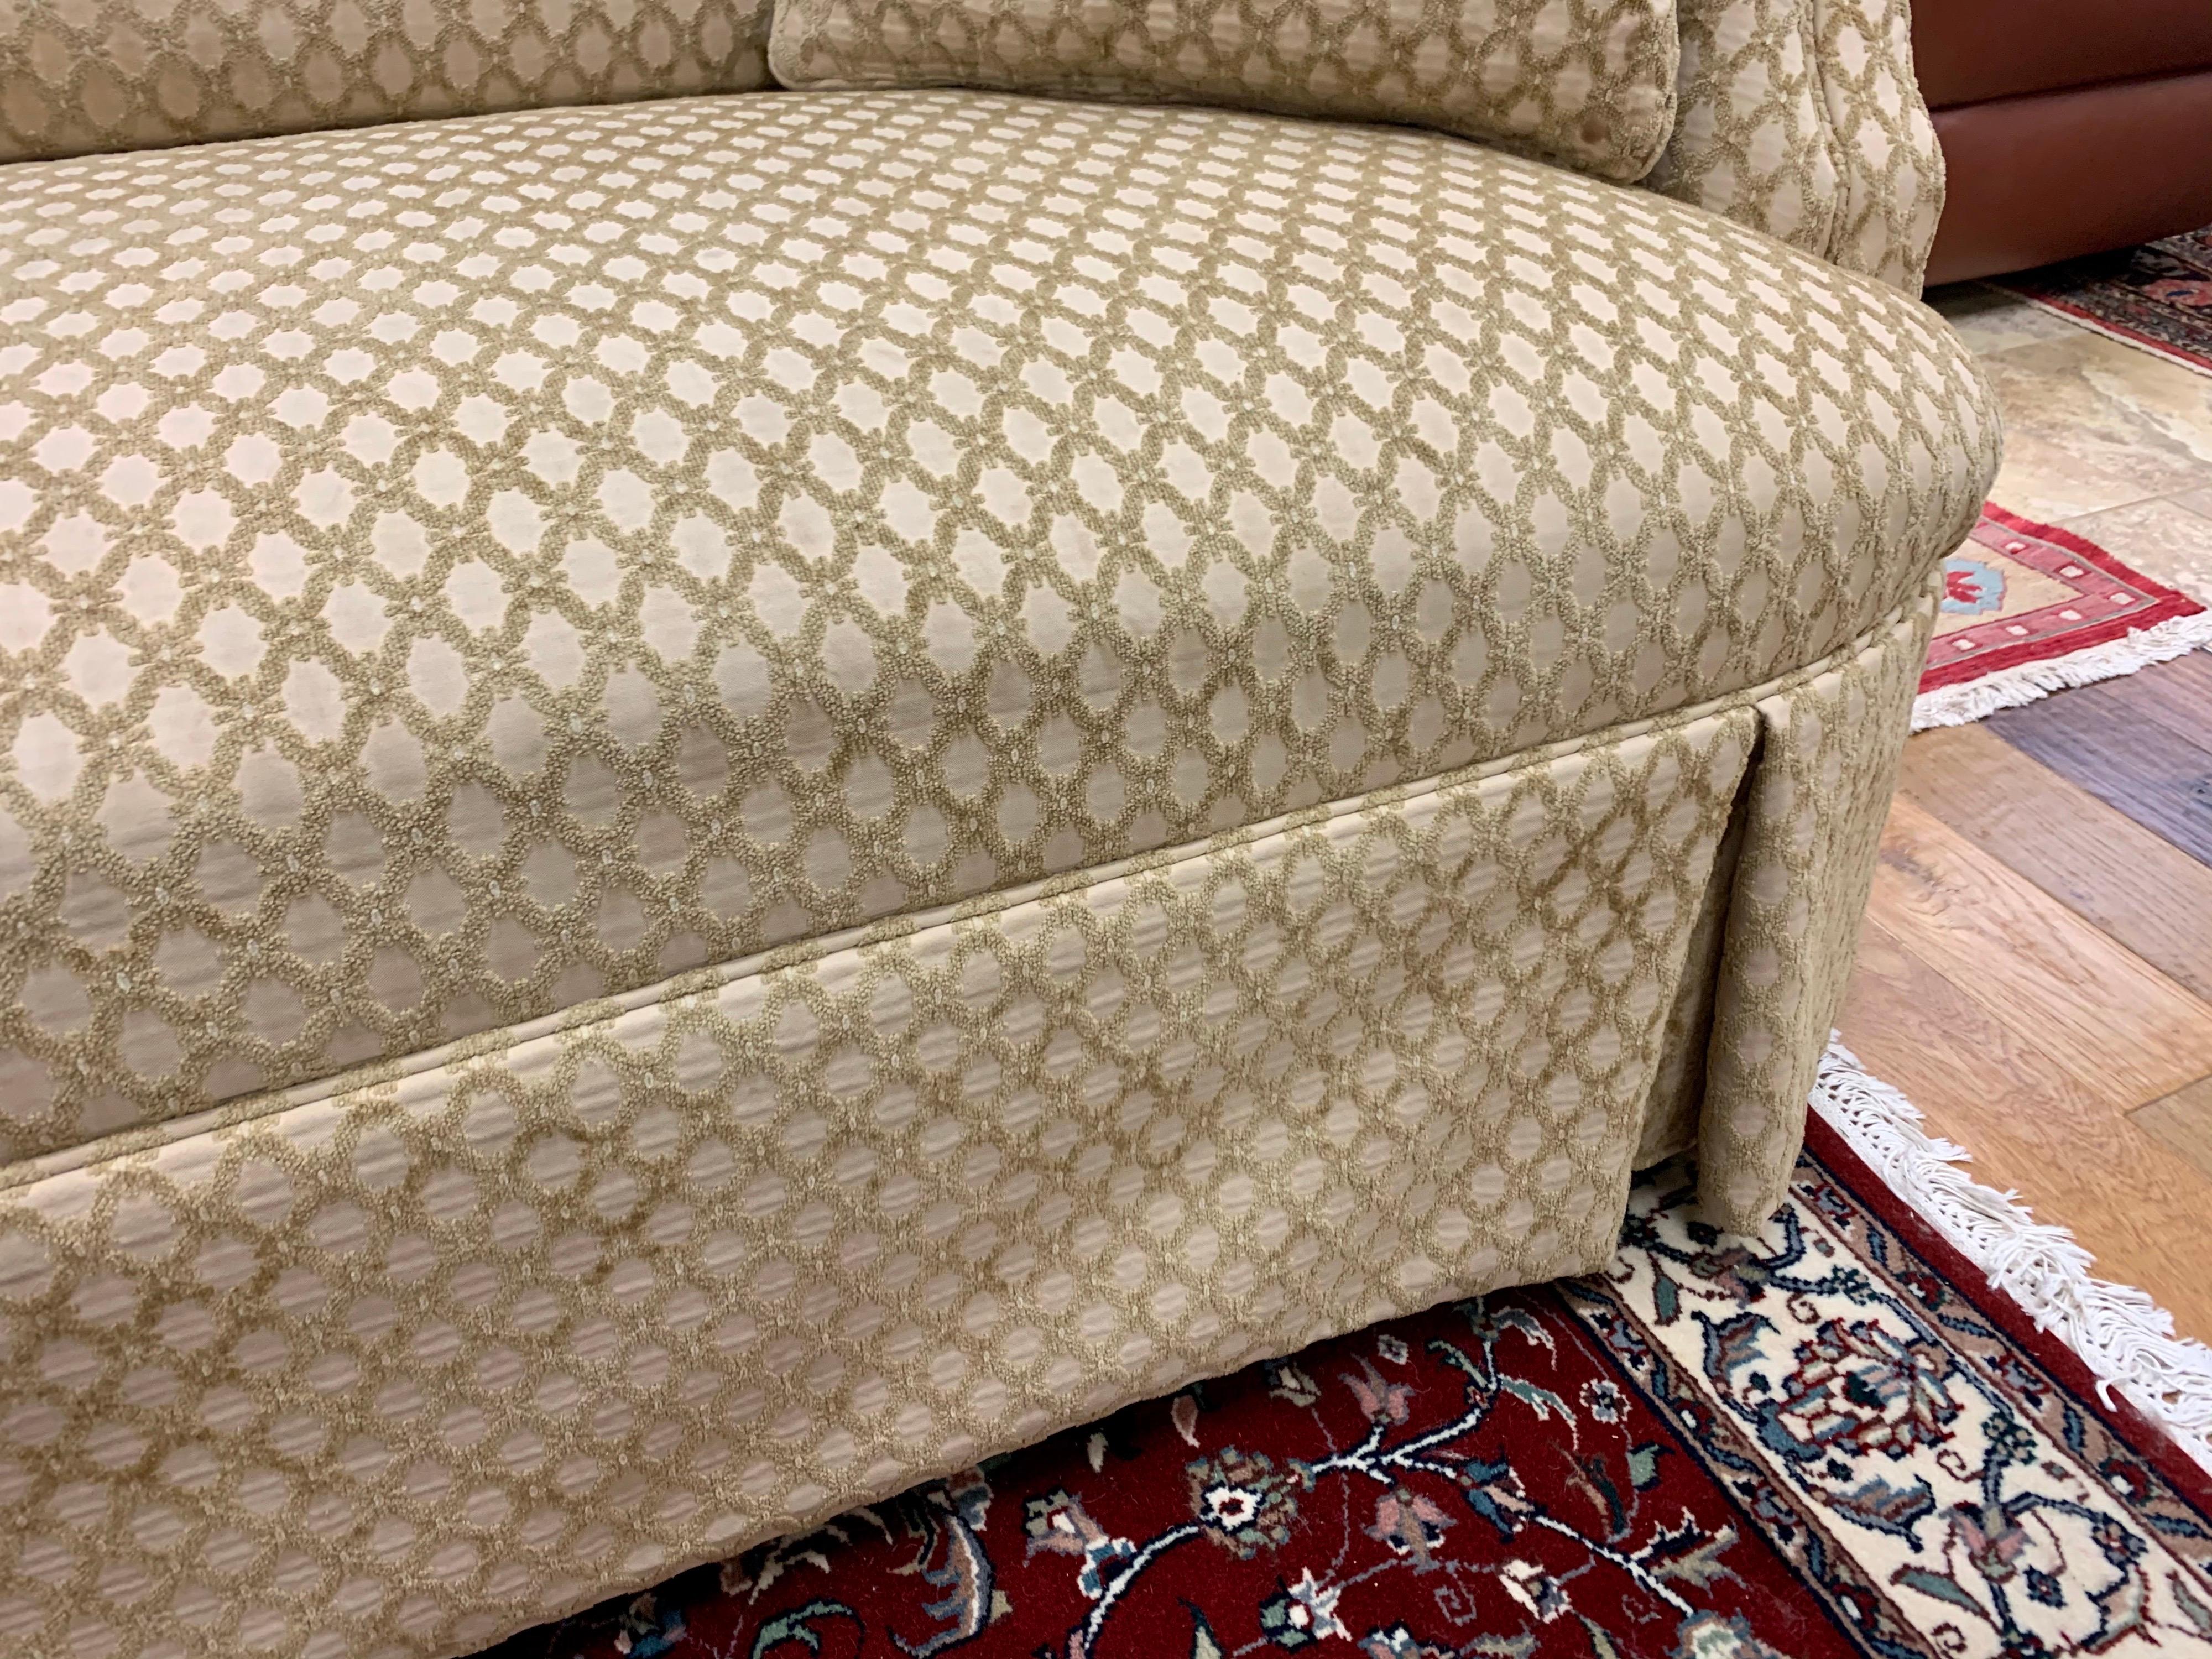 American Custom Loveseat Sofa with Raised Trellis Kravet Fabric